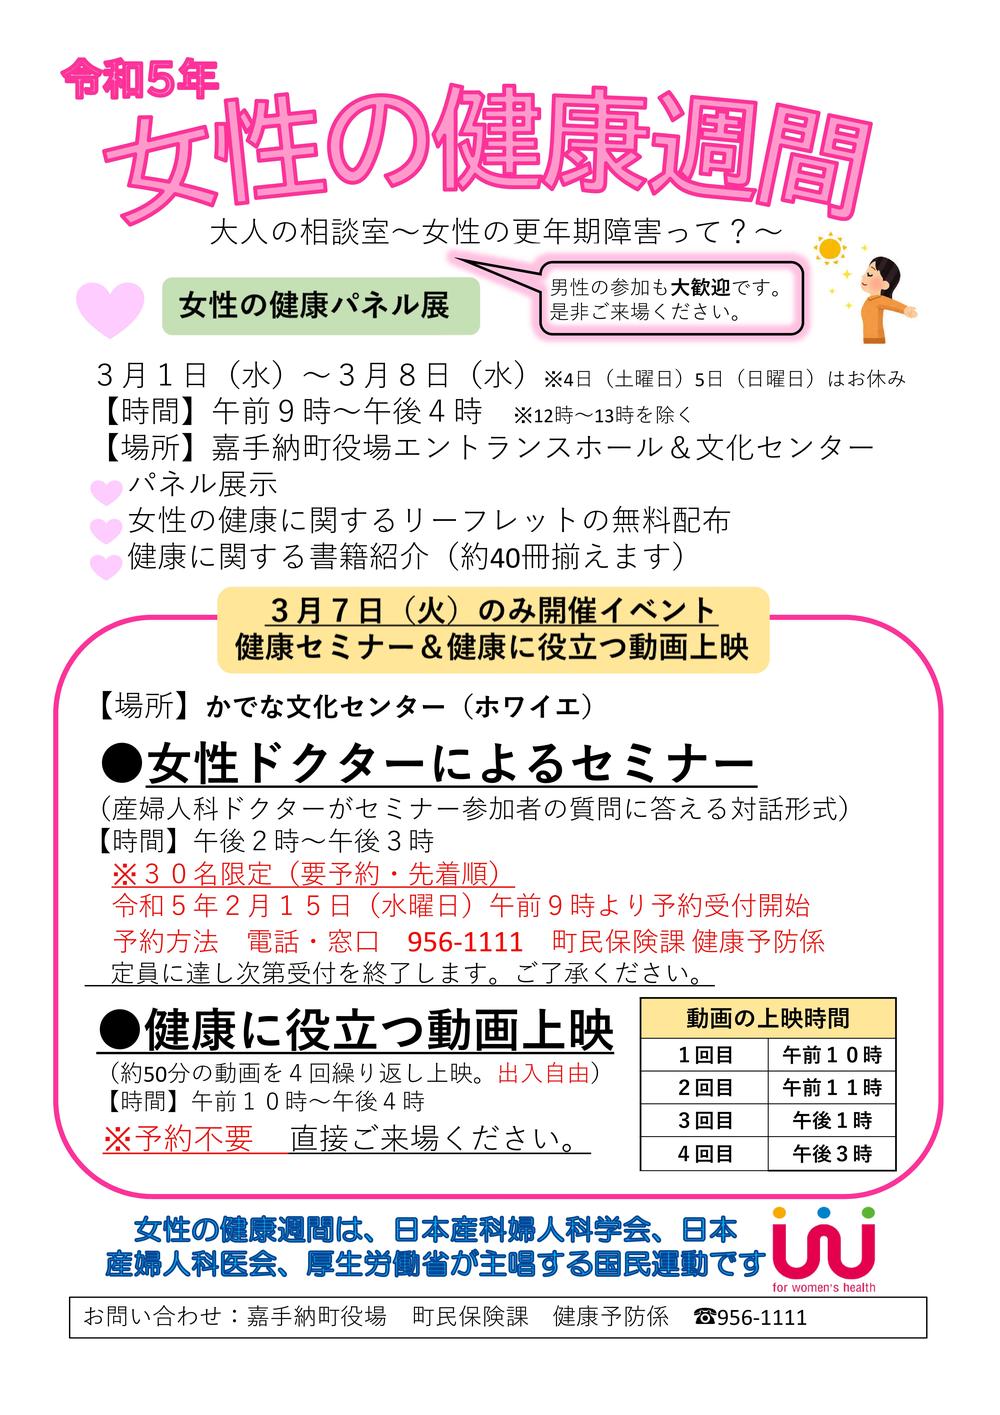 【1-5広報原稿】女性の健康週間.jpg